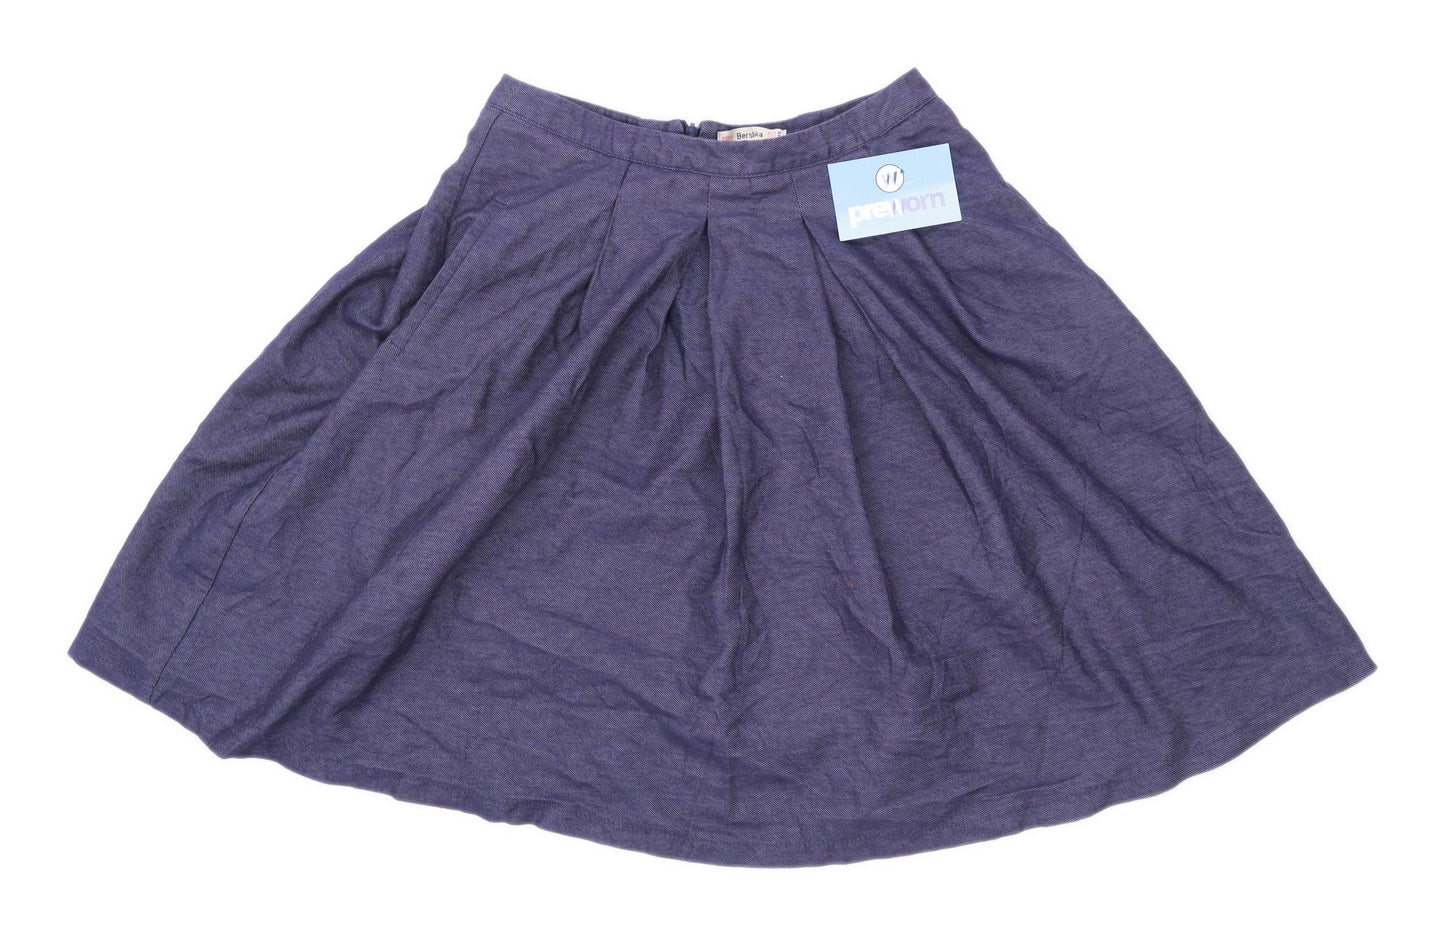 Bershka Womens Size M Cotton Blend Blue Pleated Skirt (Regular)